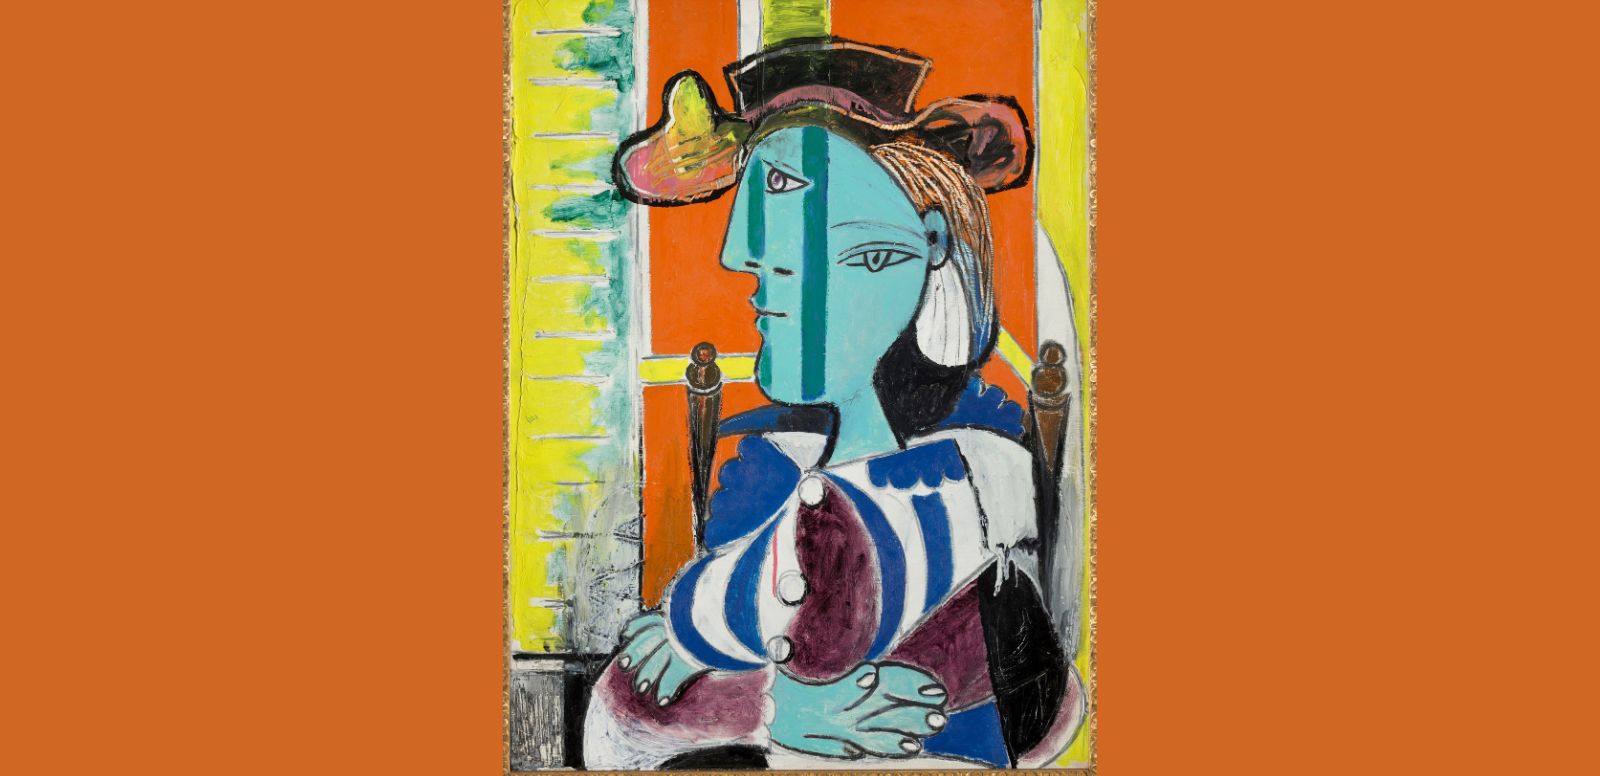 Pablo Picasso "Mujer sentada con los brazos cruzados" 1937